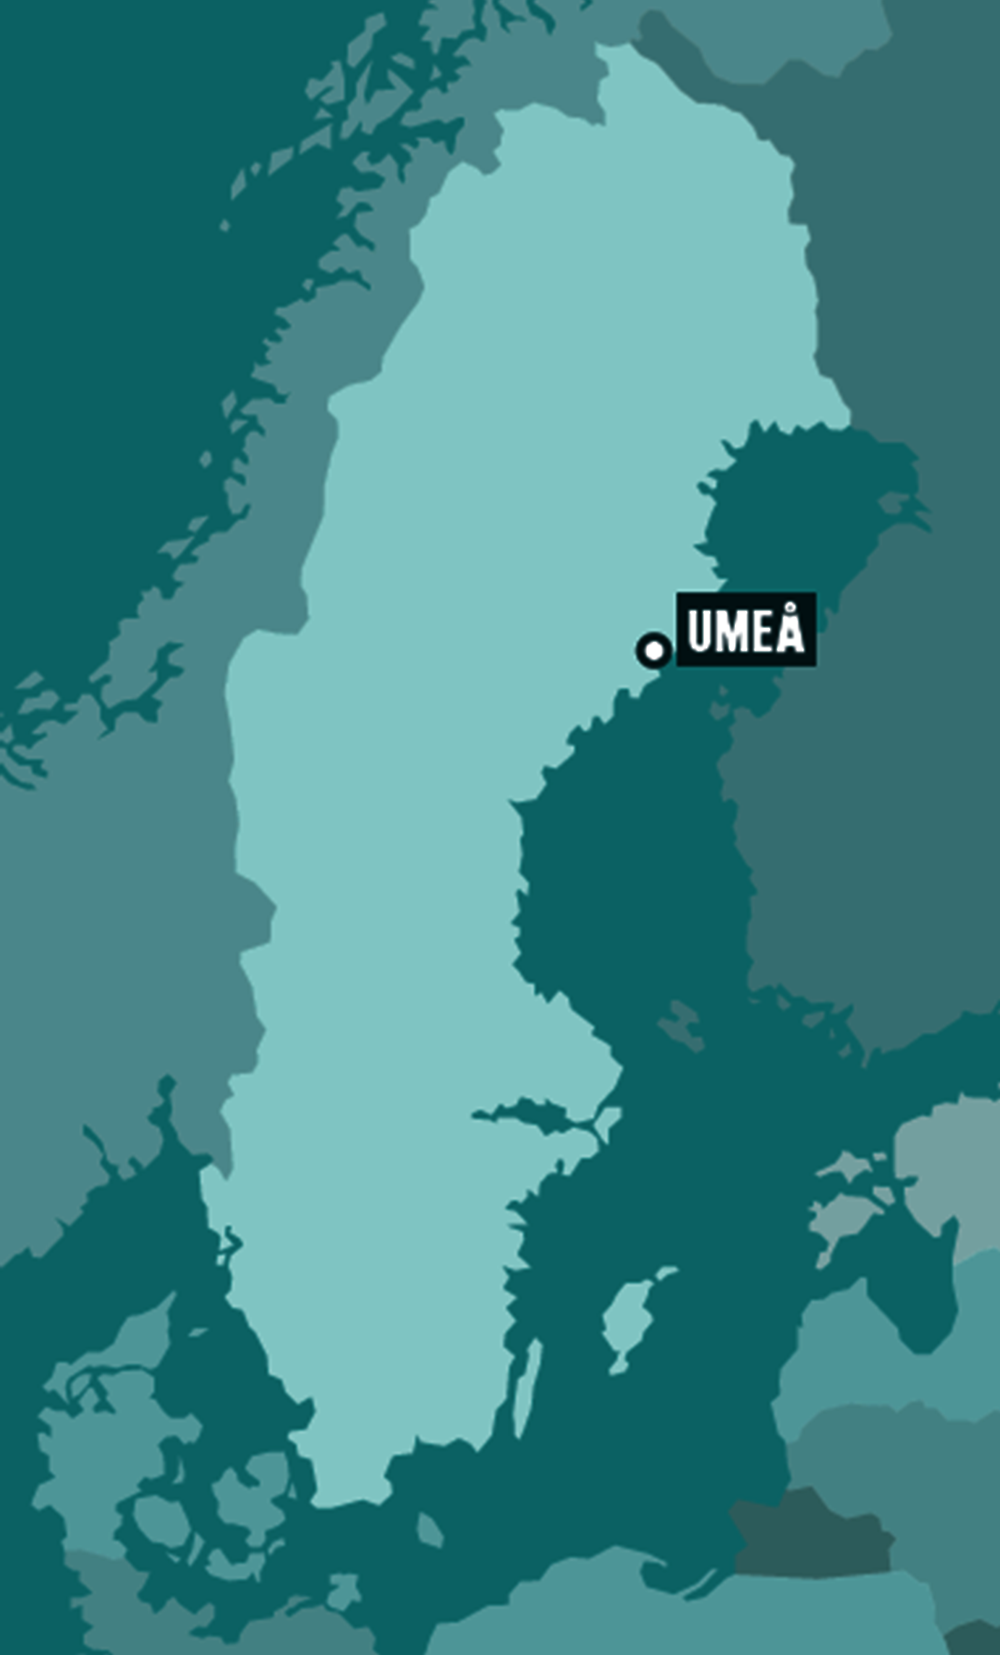 Figure 1.2. Map of Umeå, Sweden